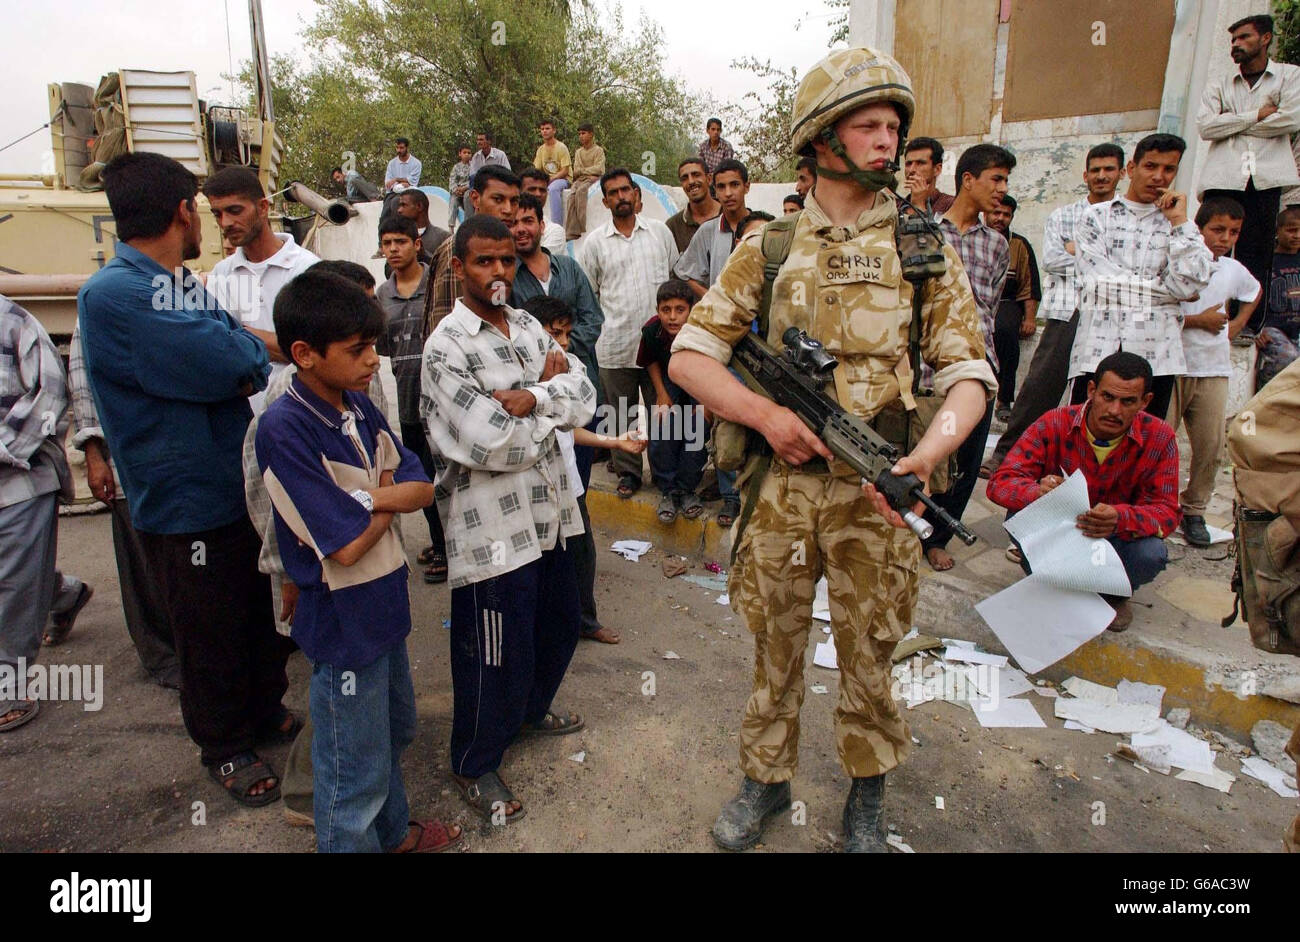 Britische Truppen auf den Straßen von Basra versuchen, die Ordnung aufrechtzuerhalten, am Freitag, den 11. April, inmitten von Berichten über umfassende Plünderungen. Offiziere des amerikanischen 7. Marine-Regiments planten, heute in dem Gebiet, auf dem es patrouilliert, im Osten Bagdads eine Ausgangssperre durchzusetzen * ... nachdem Tausende von Irakern, einschließlich ganzer Familien, Sprösseln plünderten und die Ingenieur- und Pflegeschulen plünderten. Stockfoto